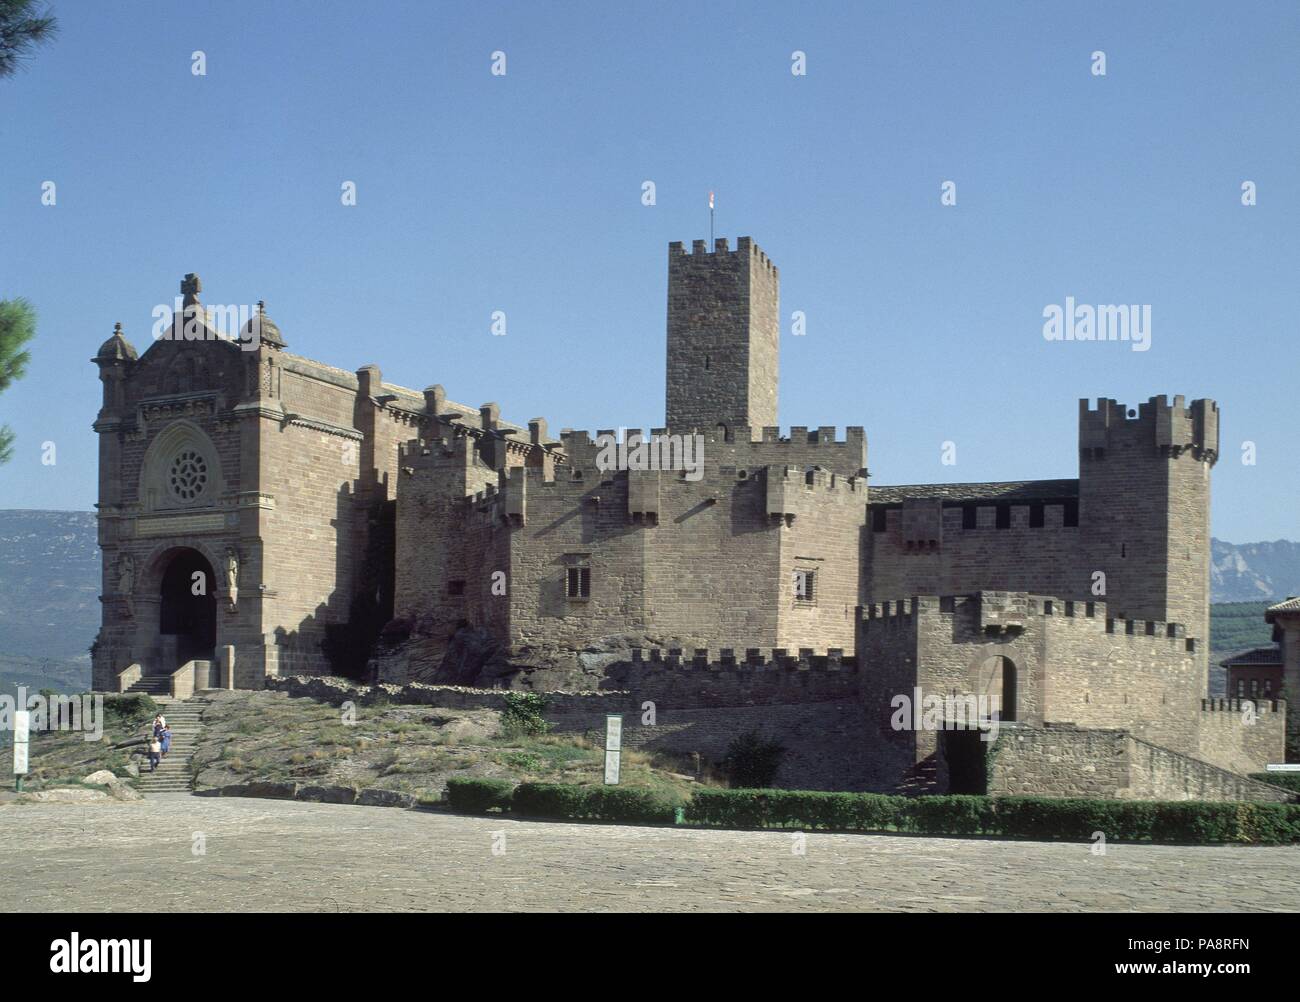 VISTA DEL CASTILLO DE JAVIER. Ubicación: Castillo, iglesia, Javier, Navarra, España. Foto de stock